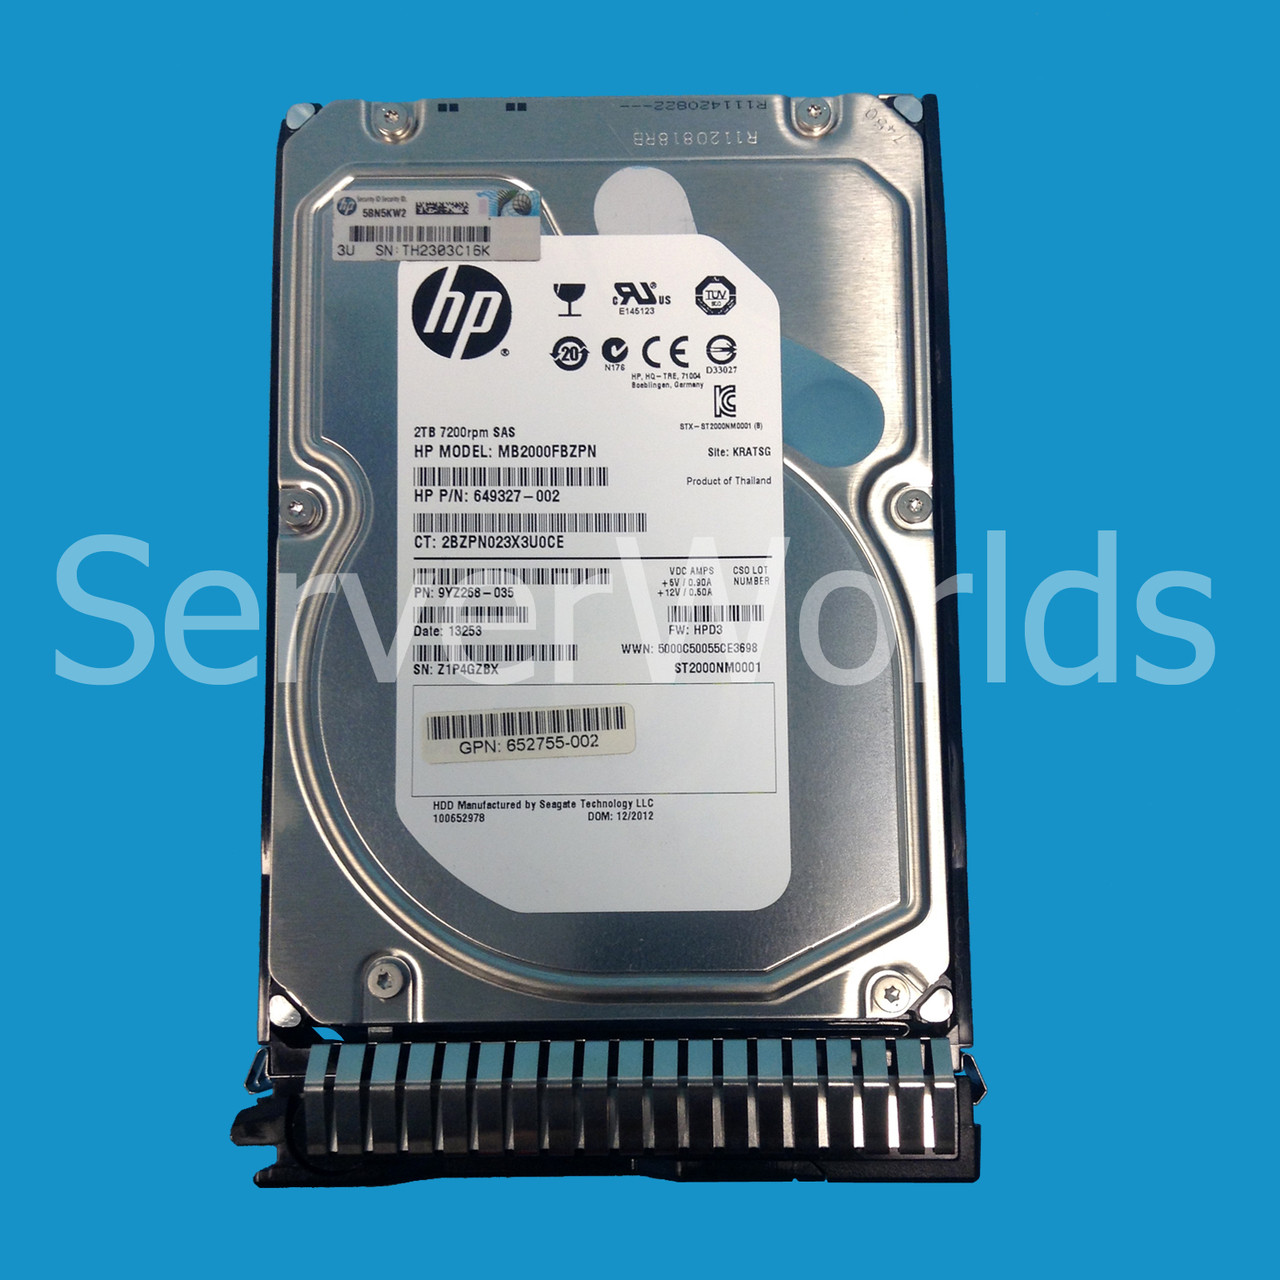 HP 649327-002 2TB Hot Swap 3.5" SAS 653948-001, 652755-002 blank tray 